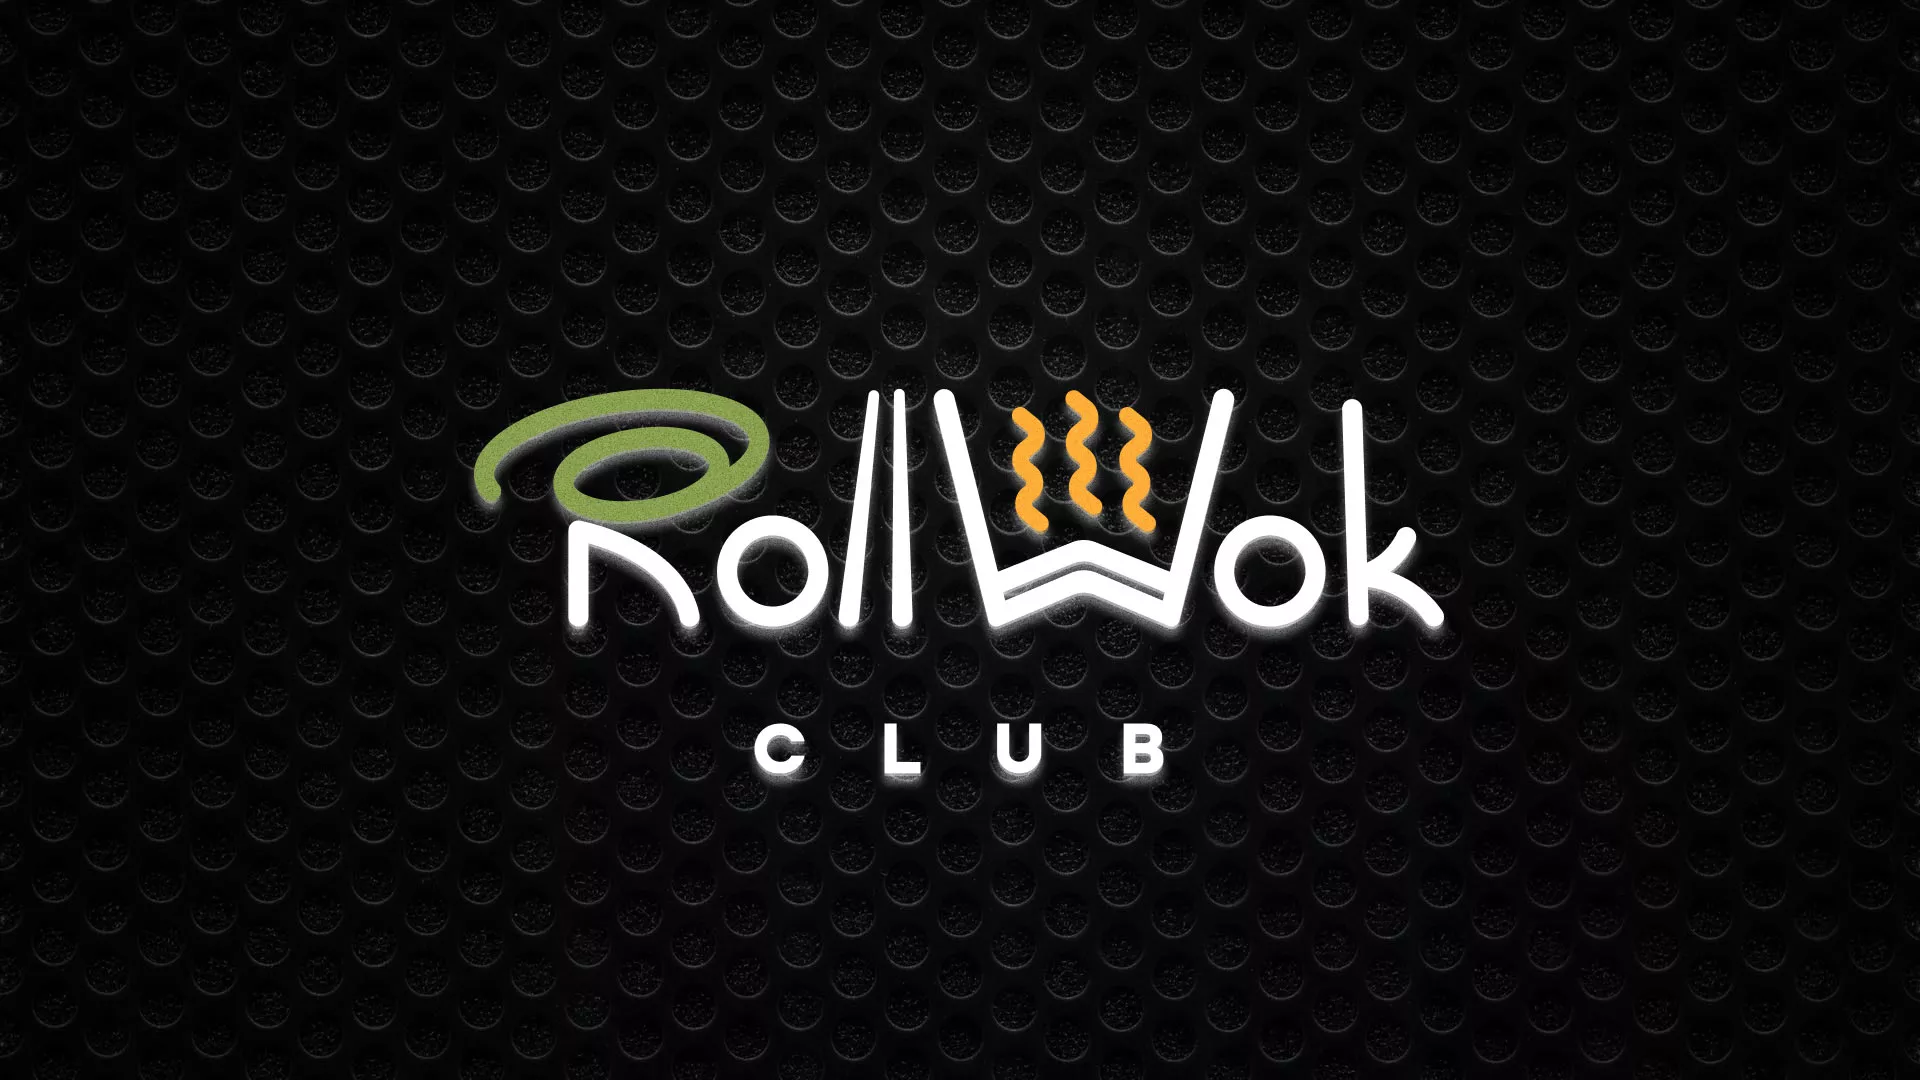 Брендирование торговых точек суши-бара «Roll Wok Club» в Касимове